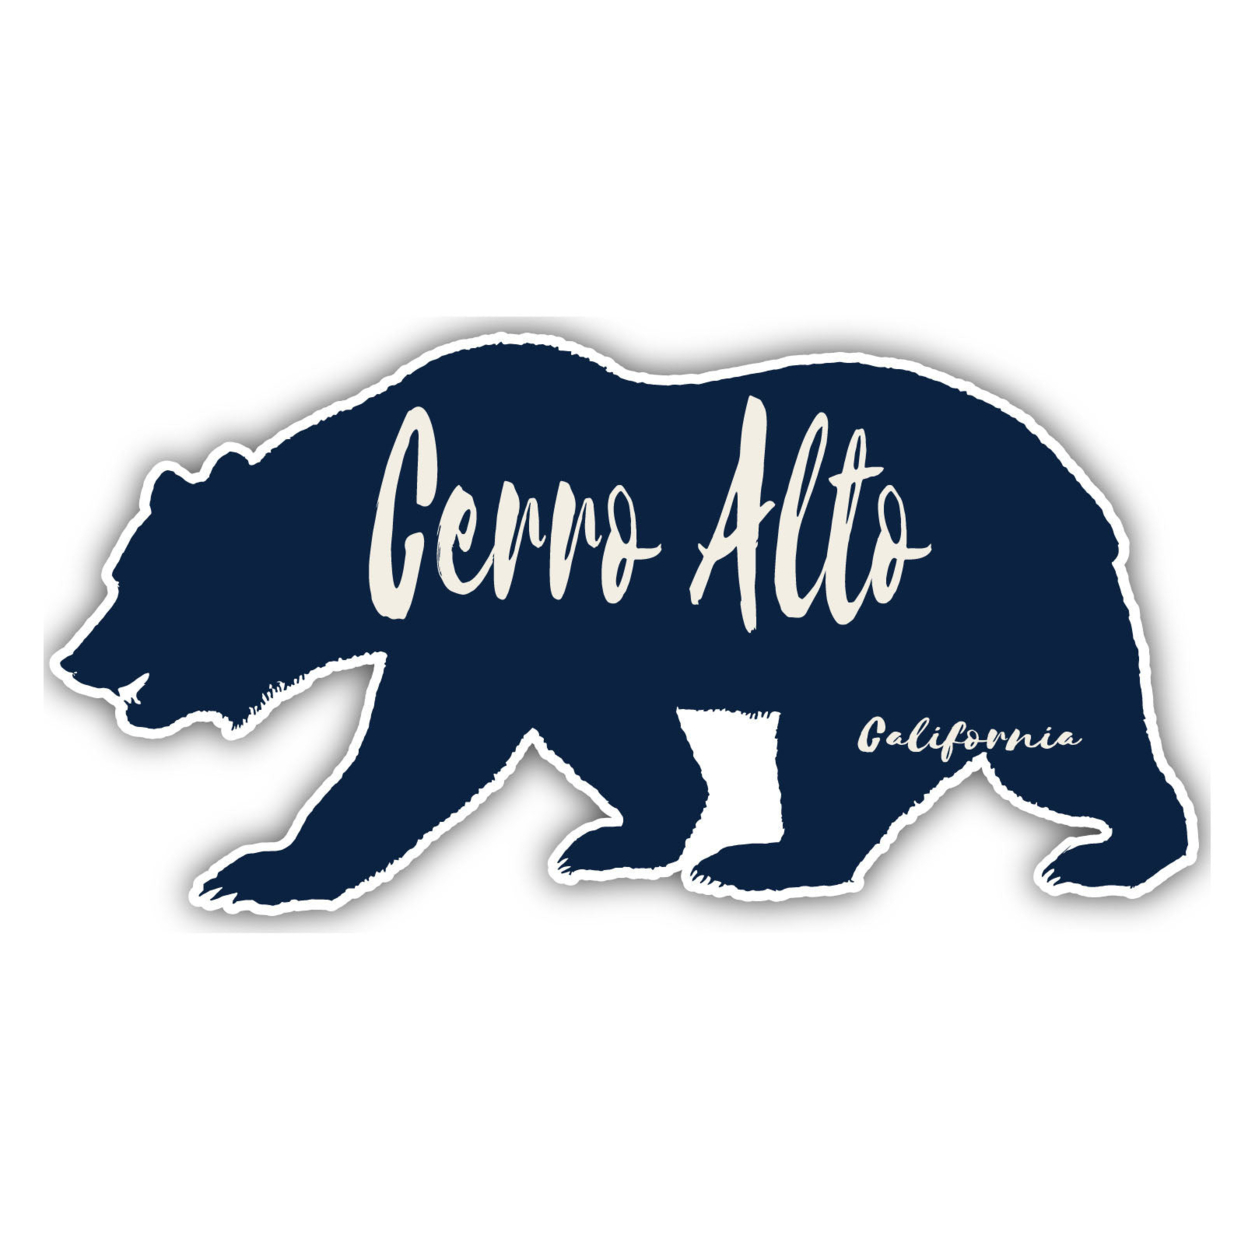 Cerro Alto California Souvenir Decorative Stickers (Choose Theme And Size) - Single Unit, 10-Inch, Bear